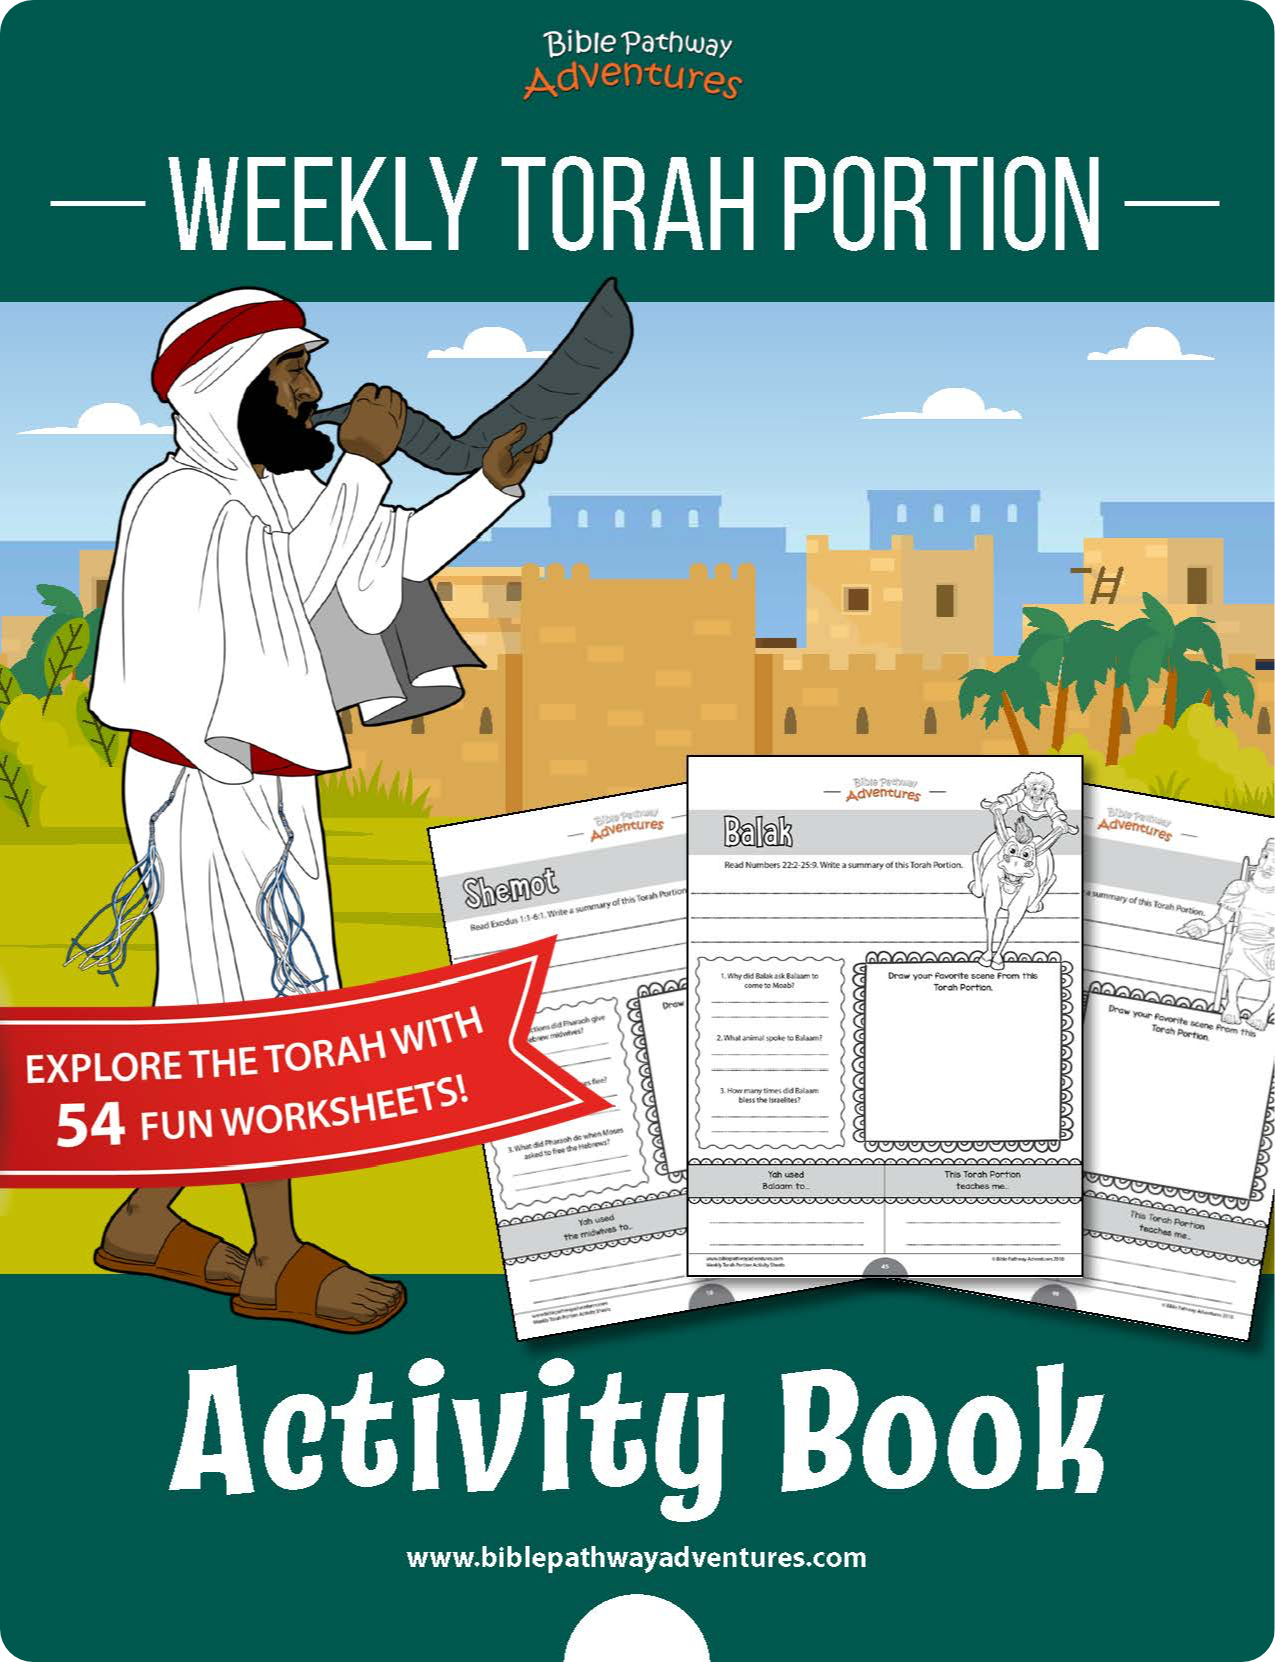 Libro de actividades de la porción semanal de la Torá